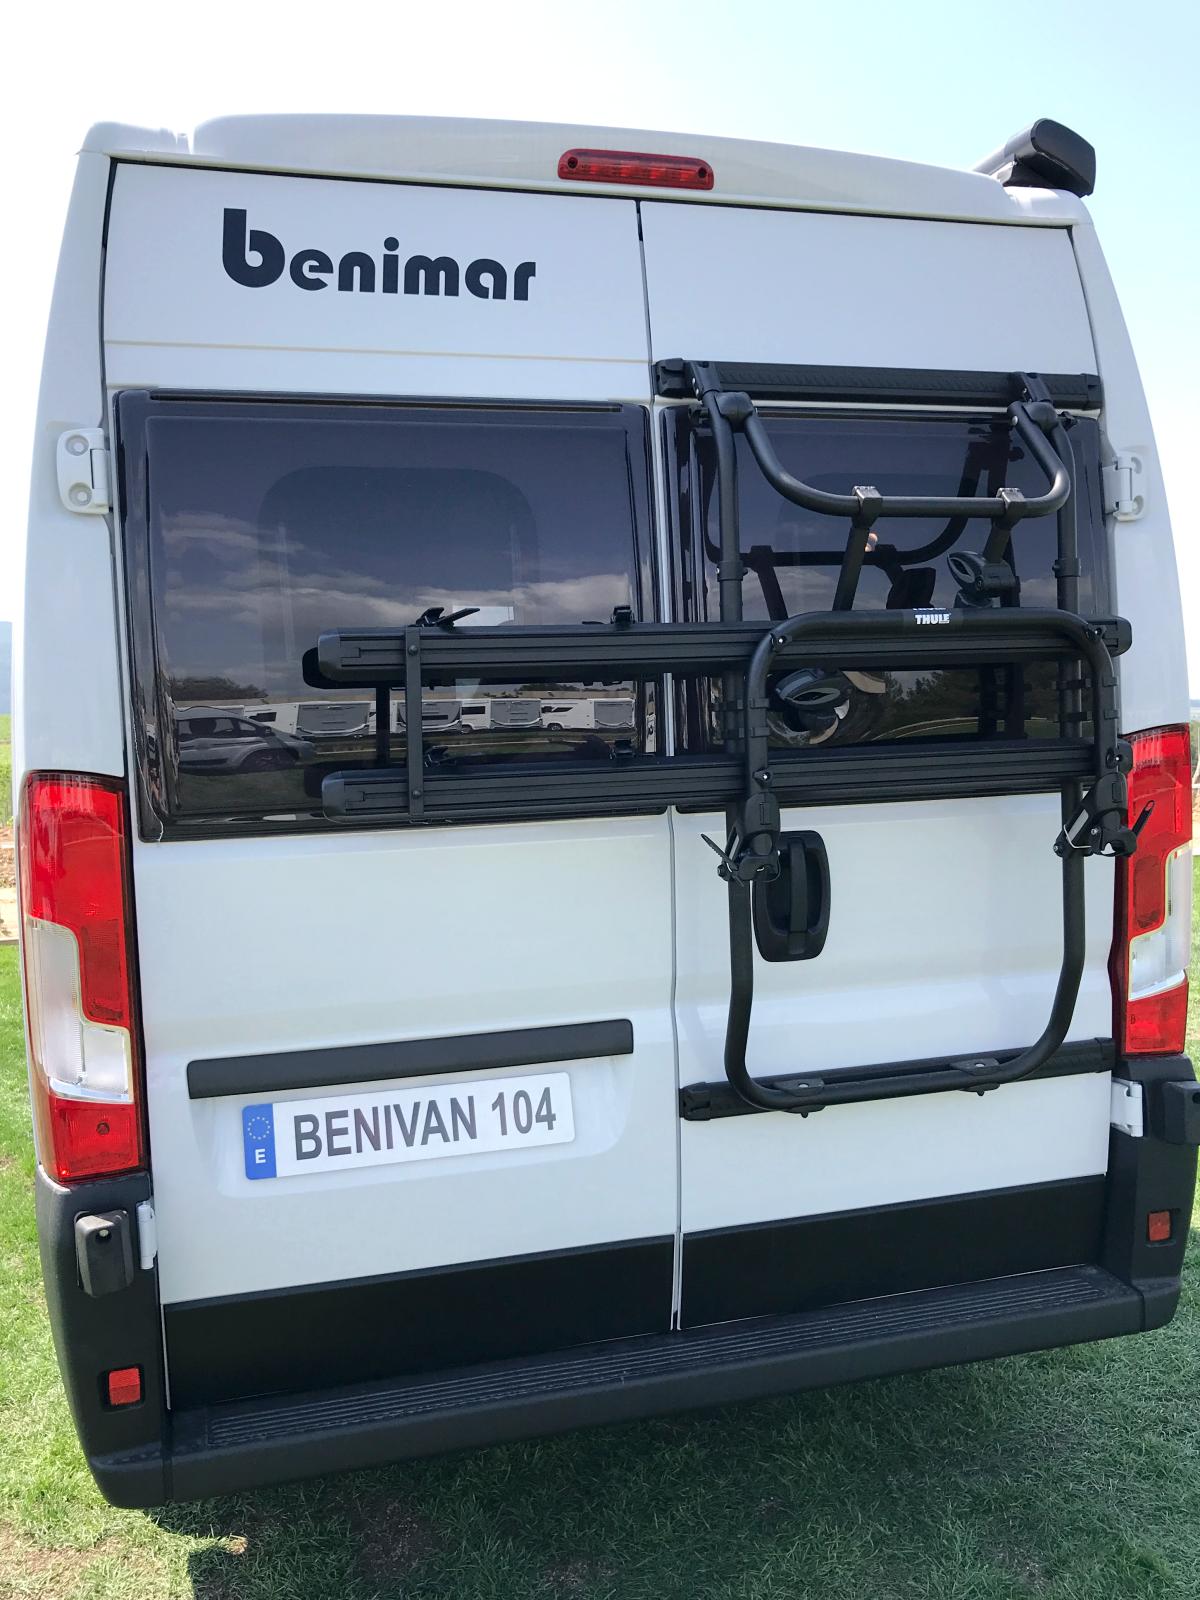 Benivan UP : 3 fourgons suréquipés à moins de 45.000 €